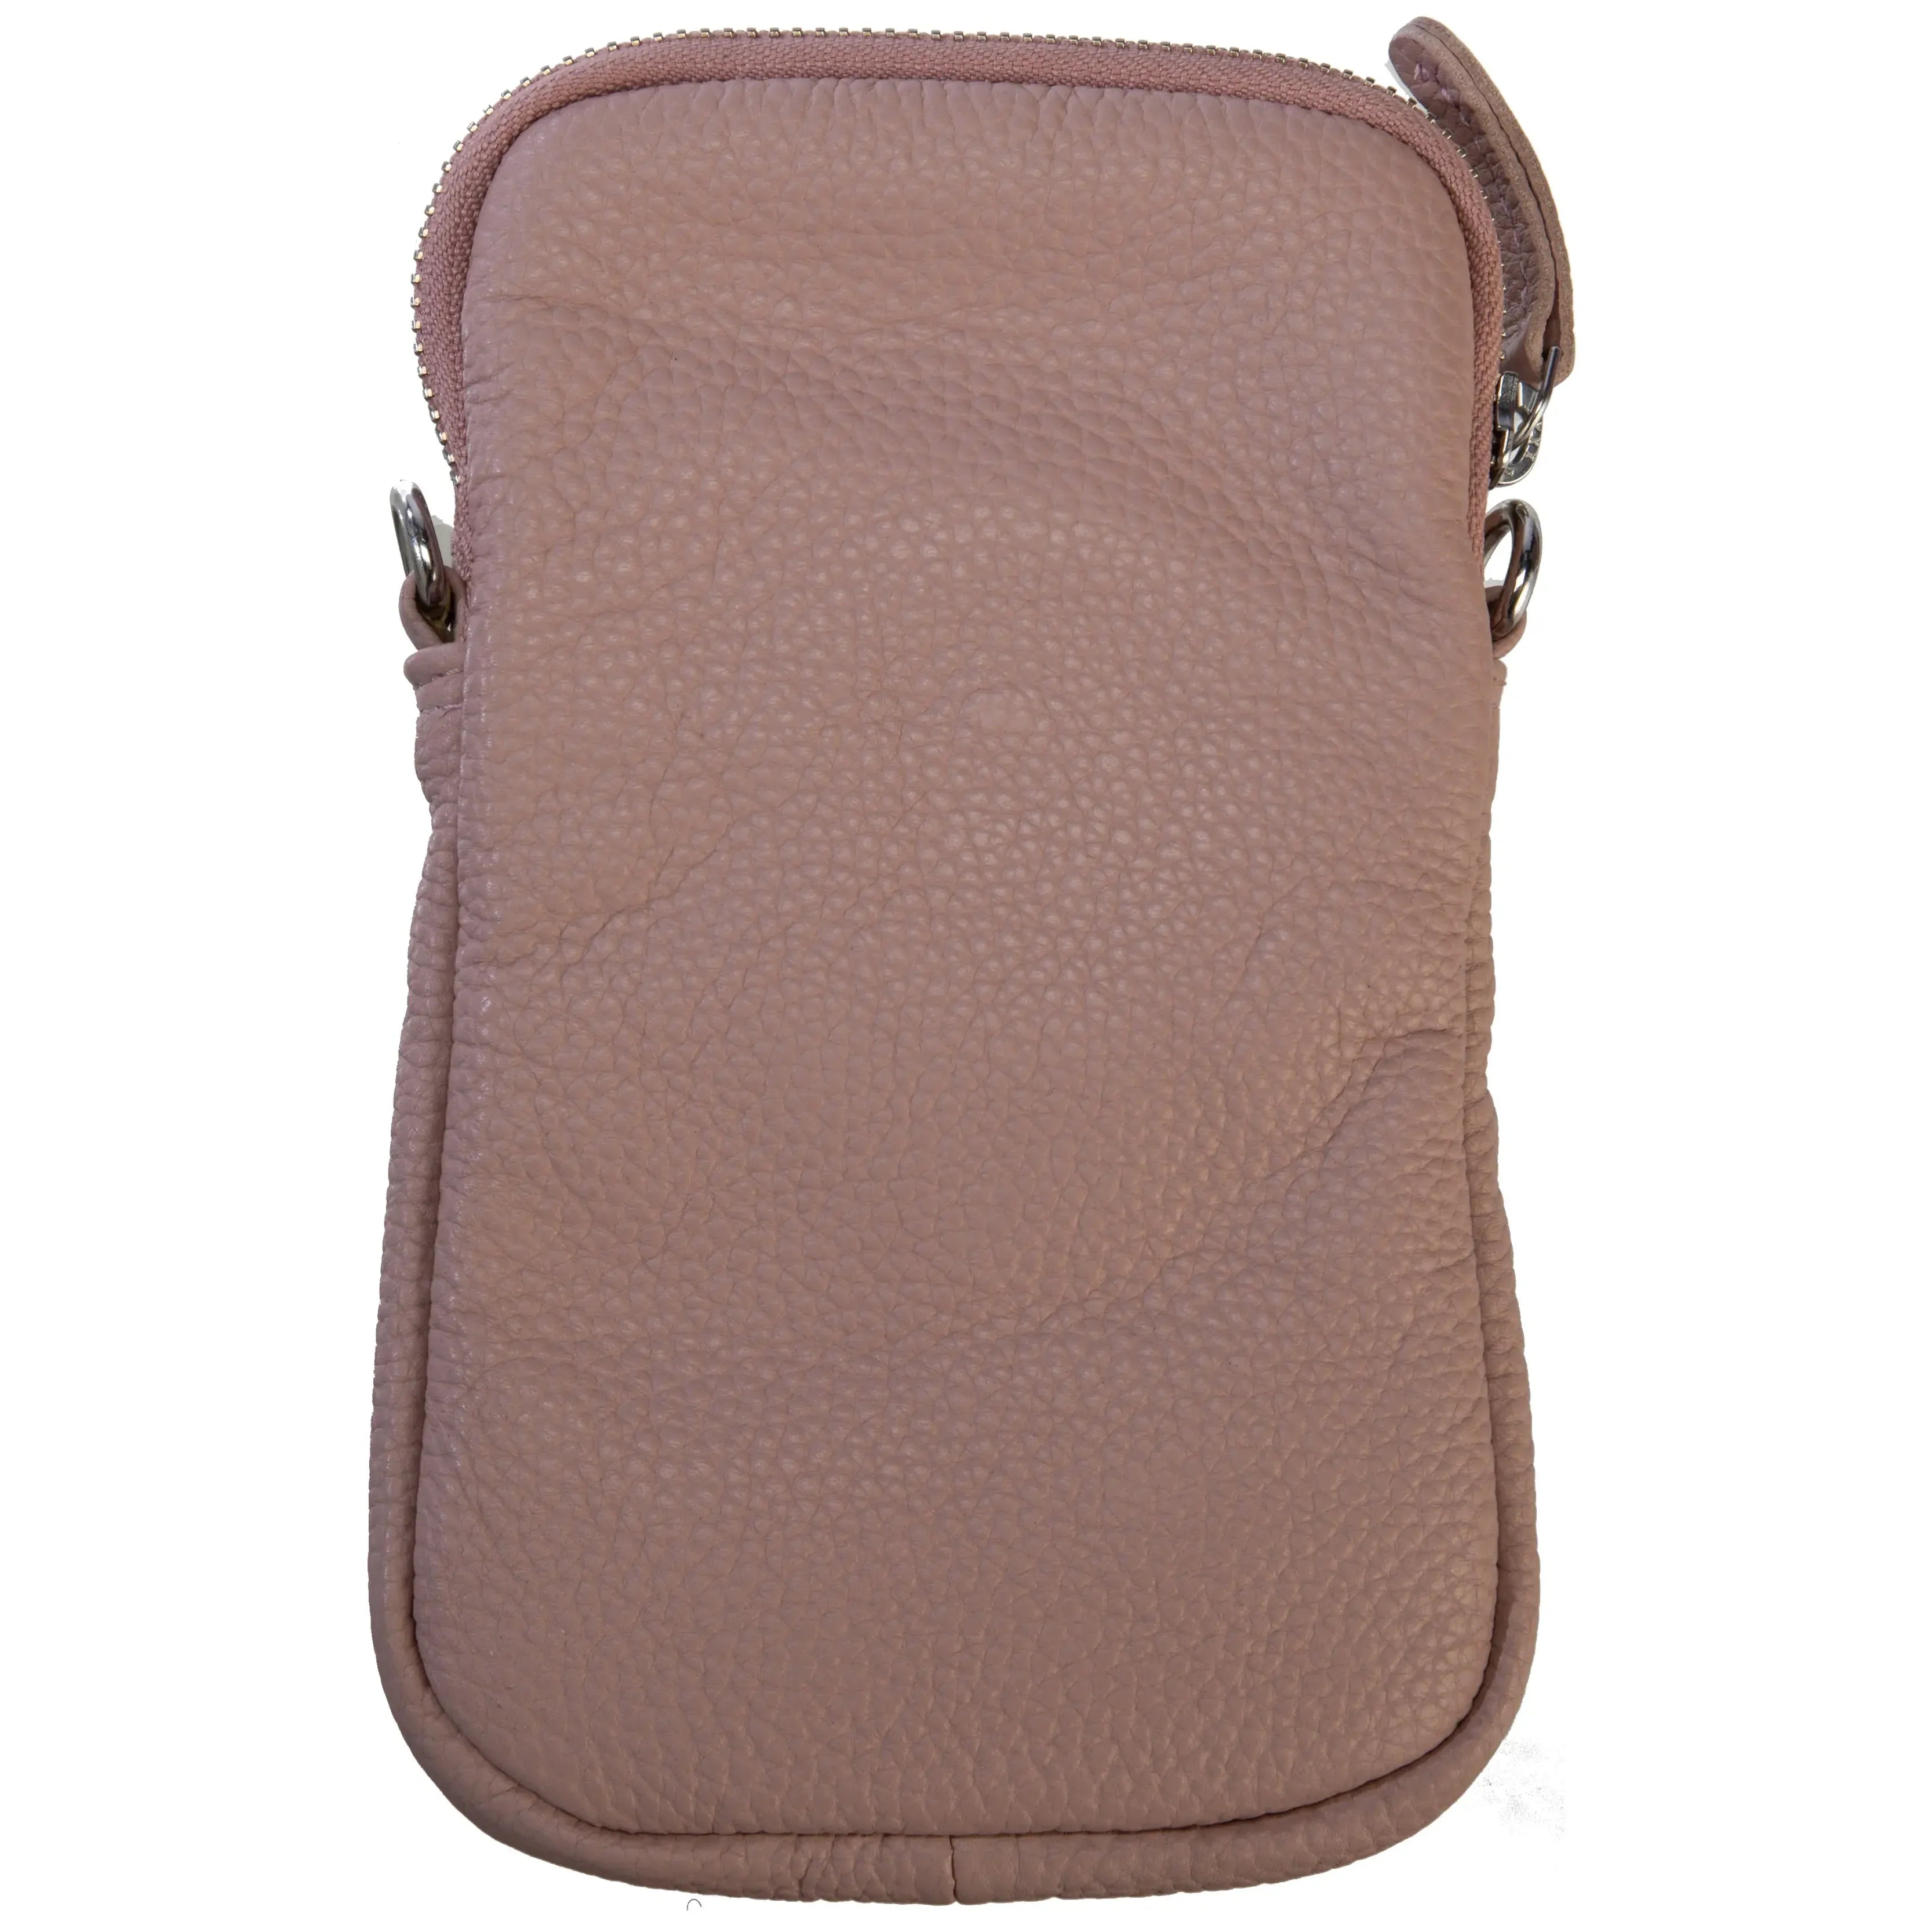 koffer-direkt.de Prato cell phone shoulder bag 20 cm - light beige